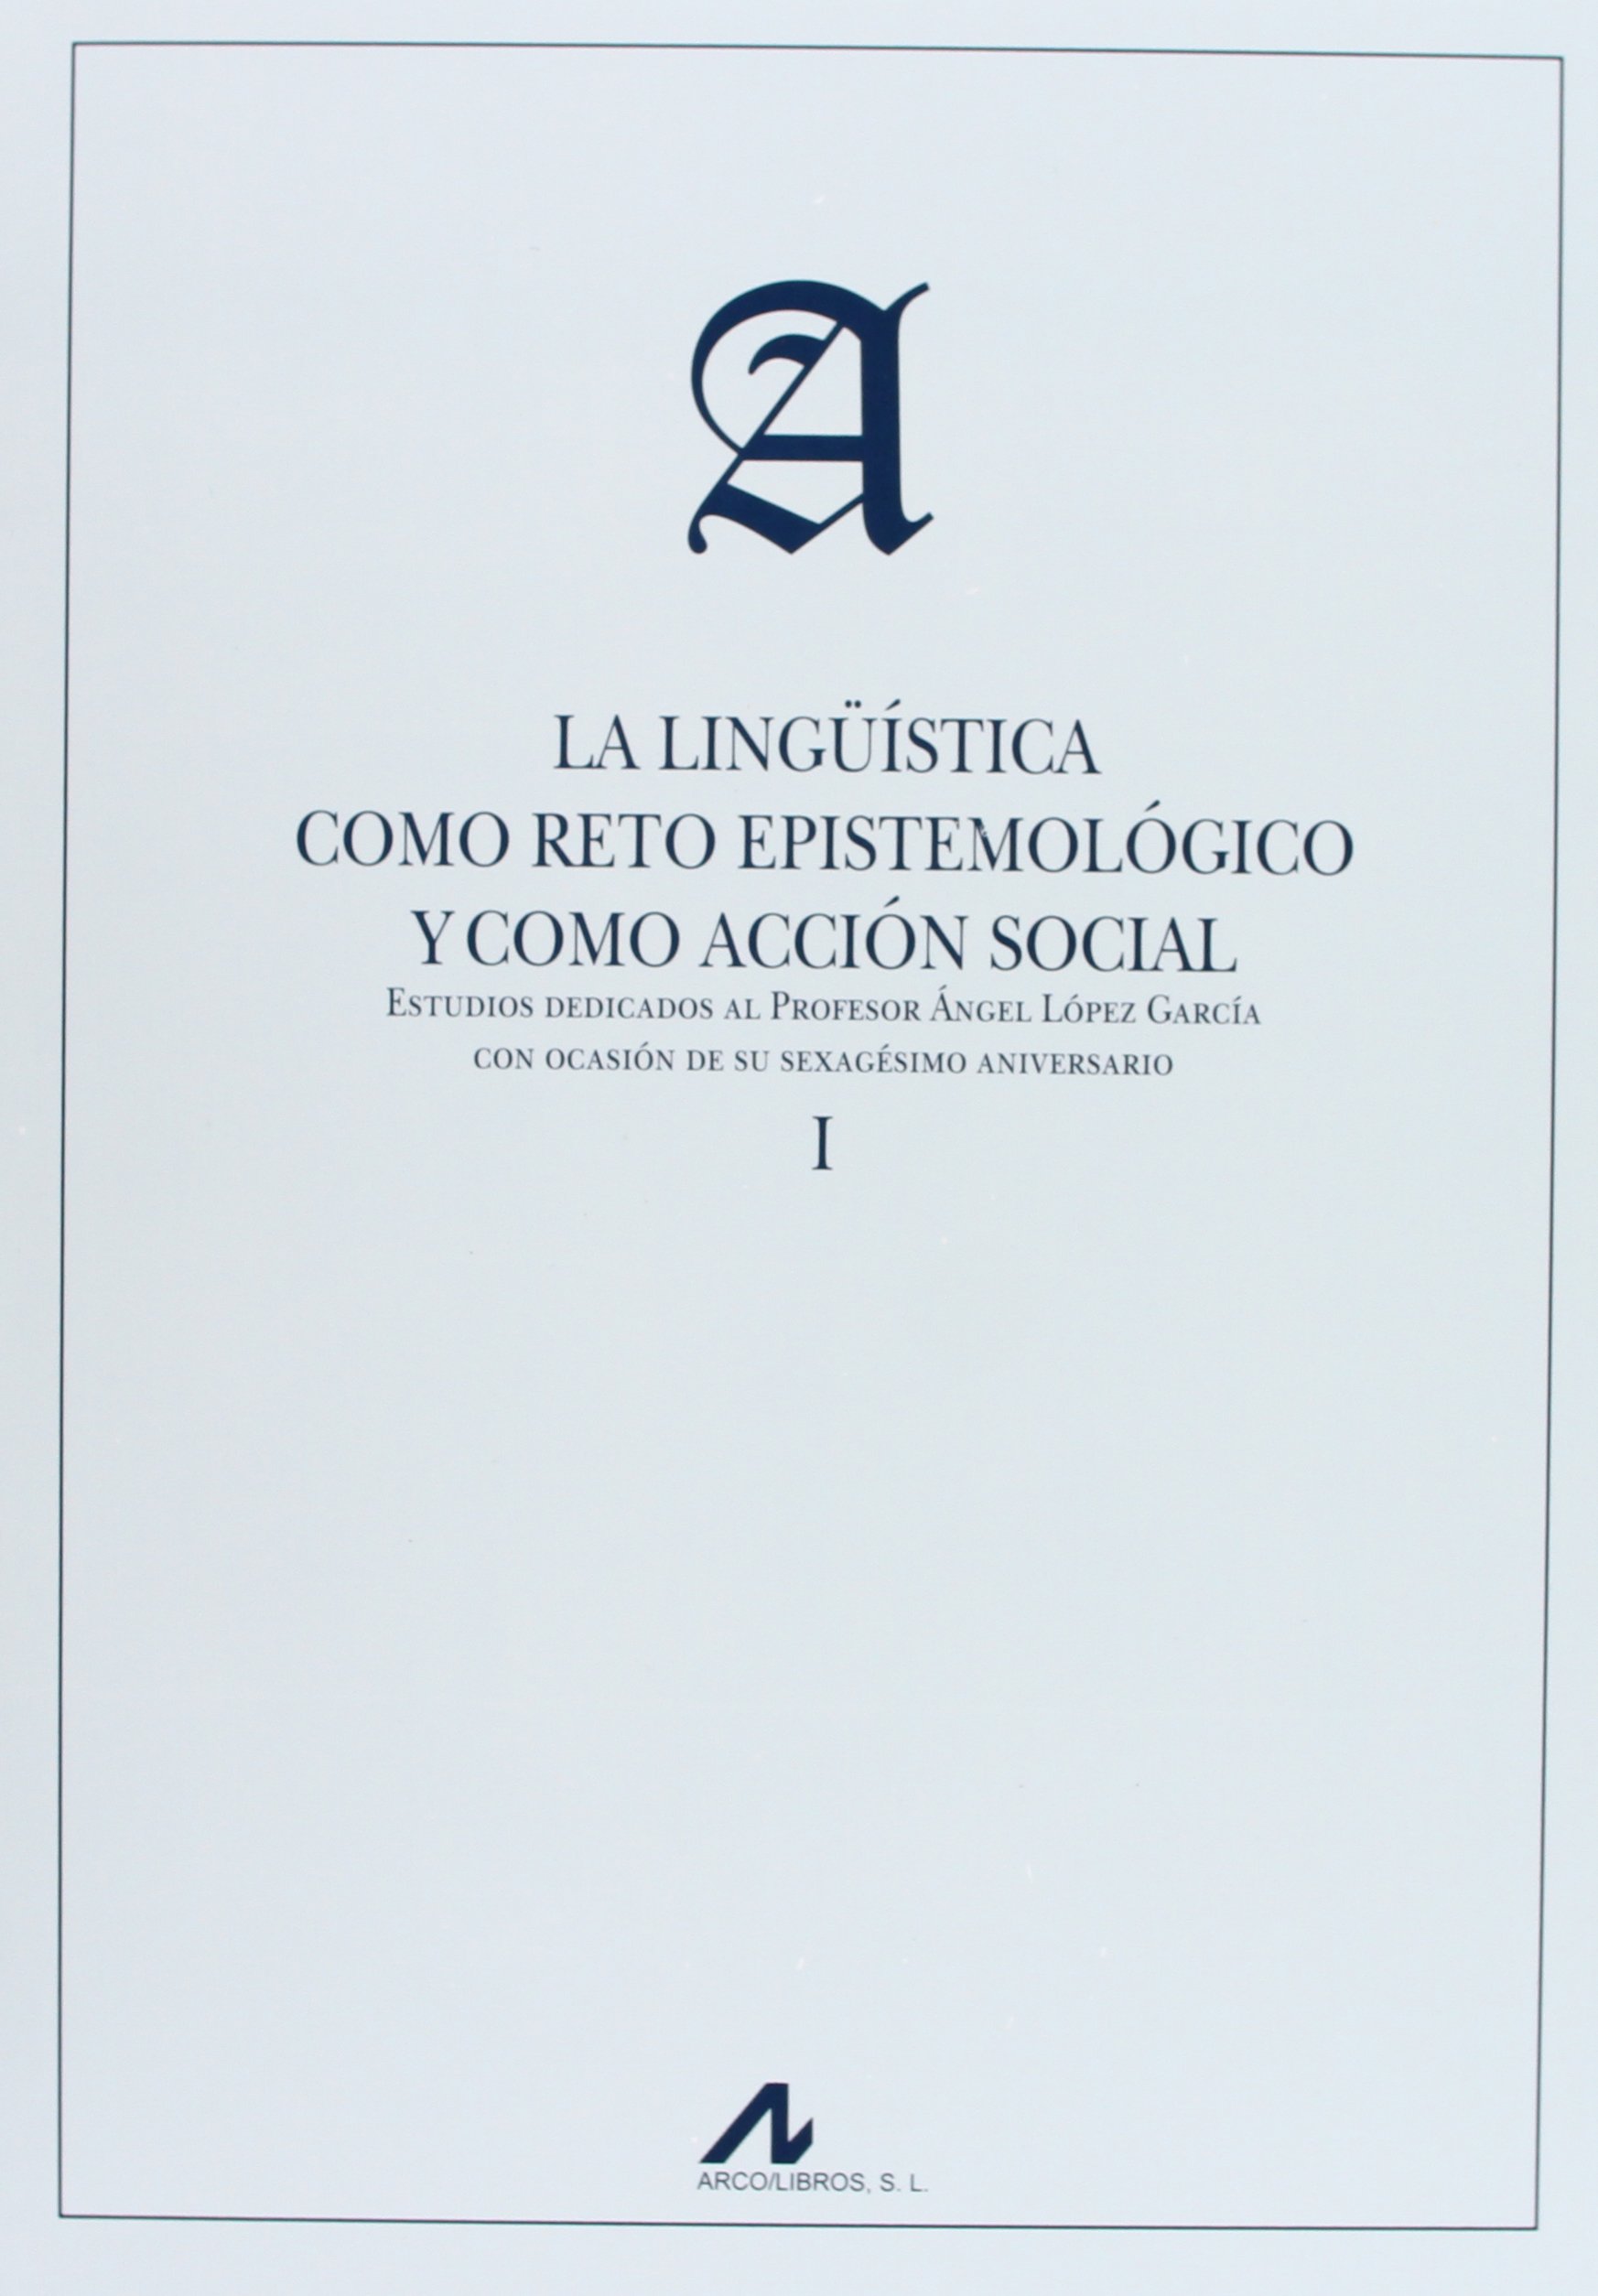 Imagen de portada del libro La lingüística como reto epistemológico y como acción social